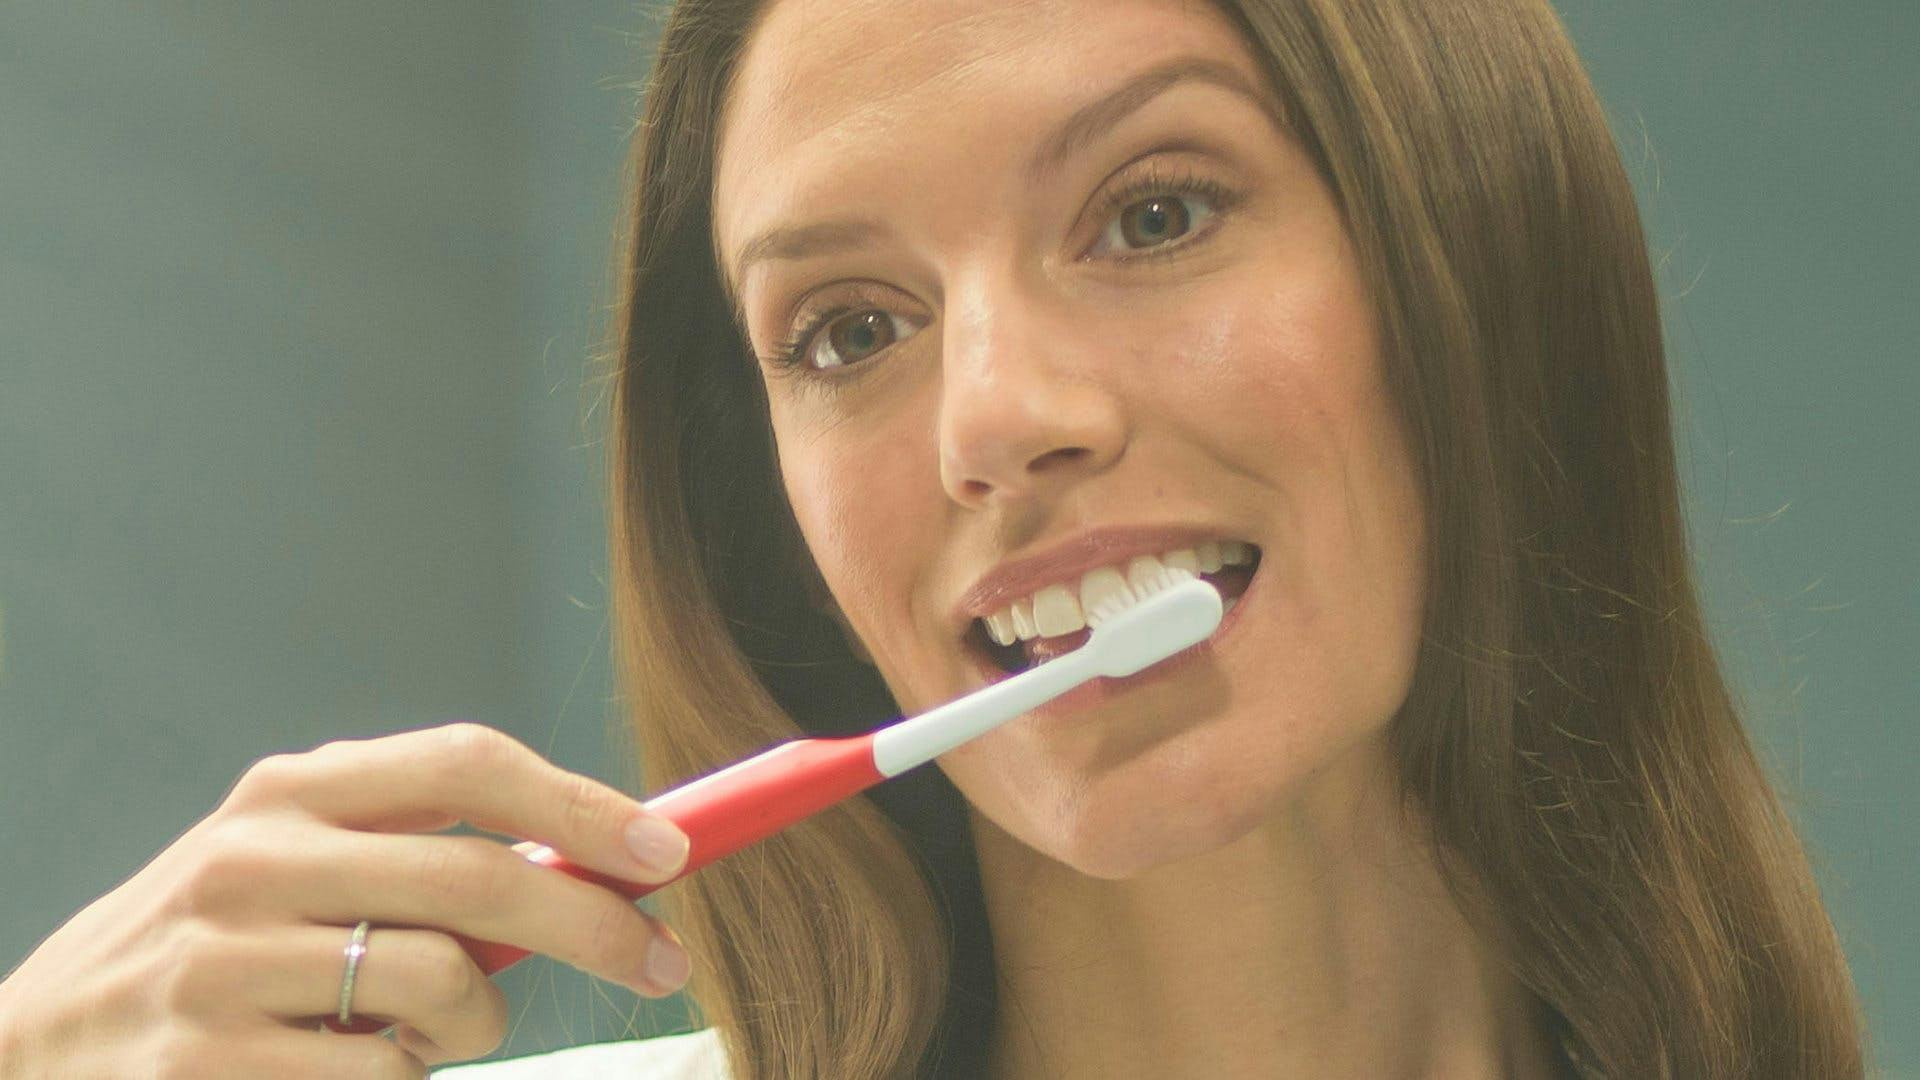 Mujer mirando al lavabo agarrando un cepillo de dientes